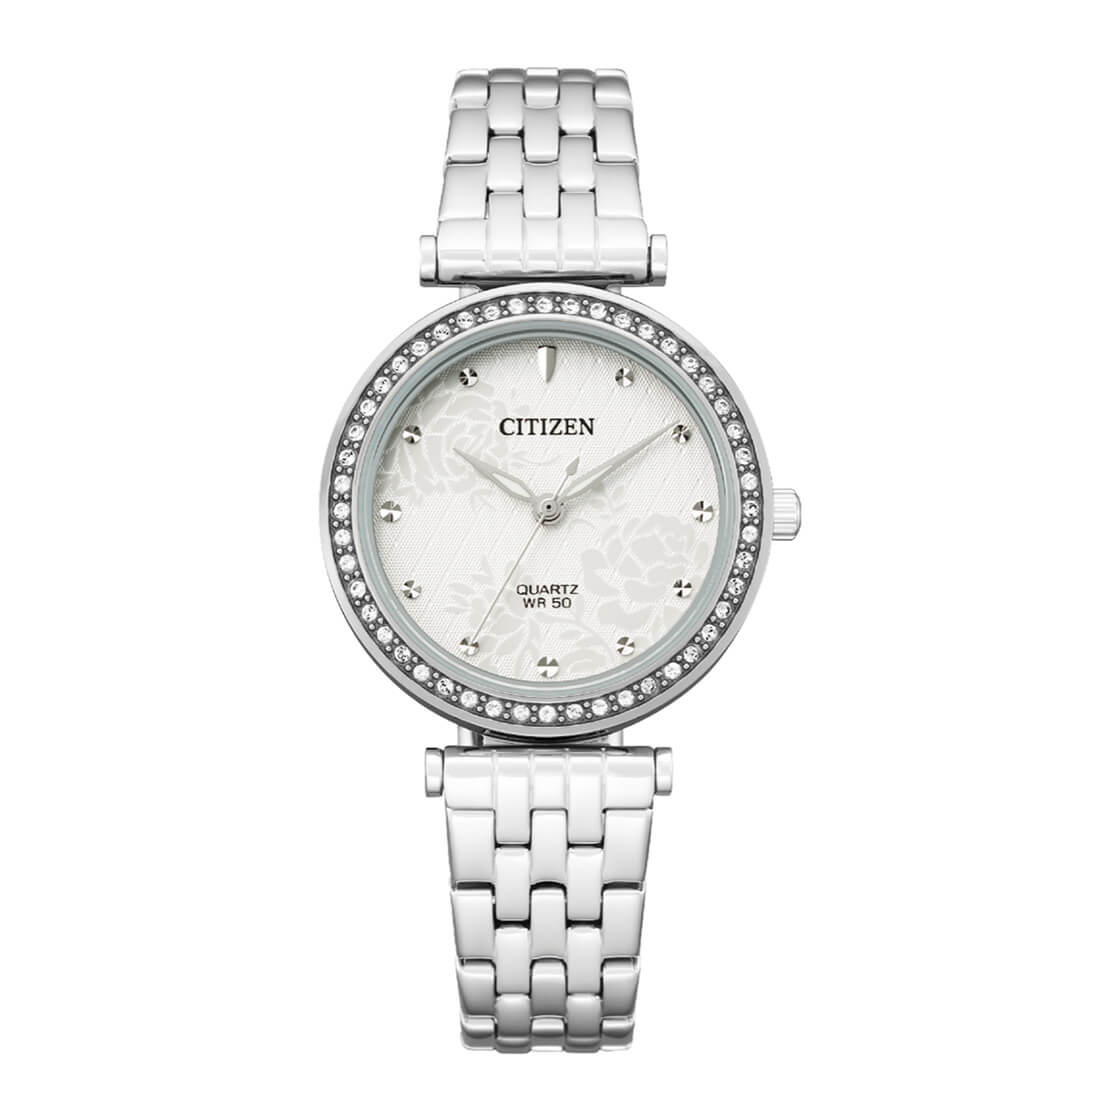 Citizen - ER0211-52A - Quartz Stainless Steel Watch For Women